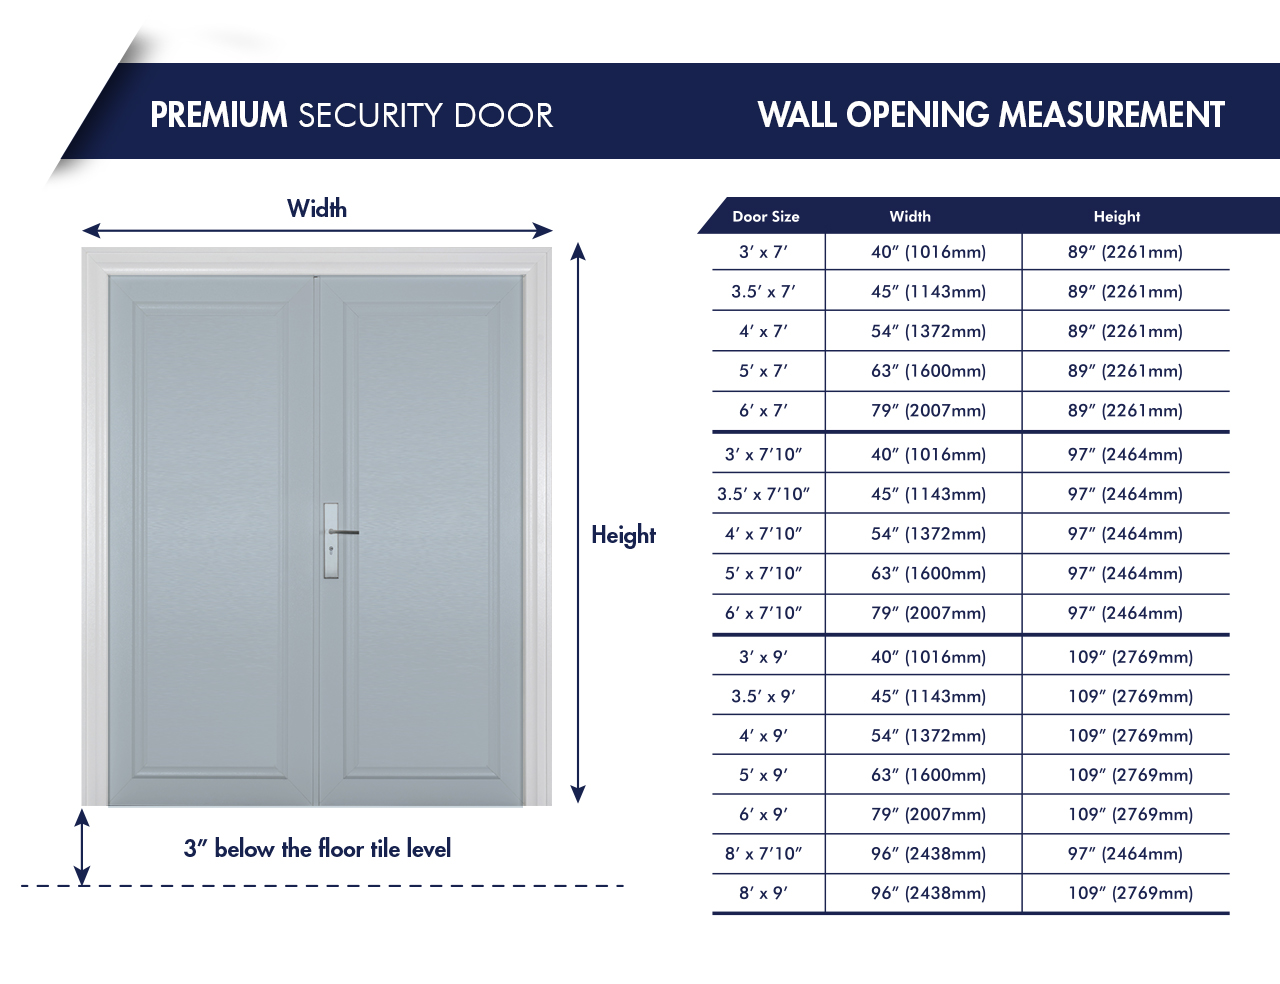 Premium wall opening measurement